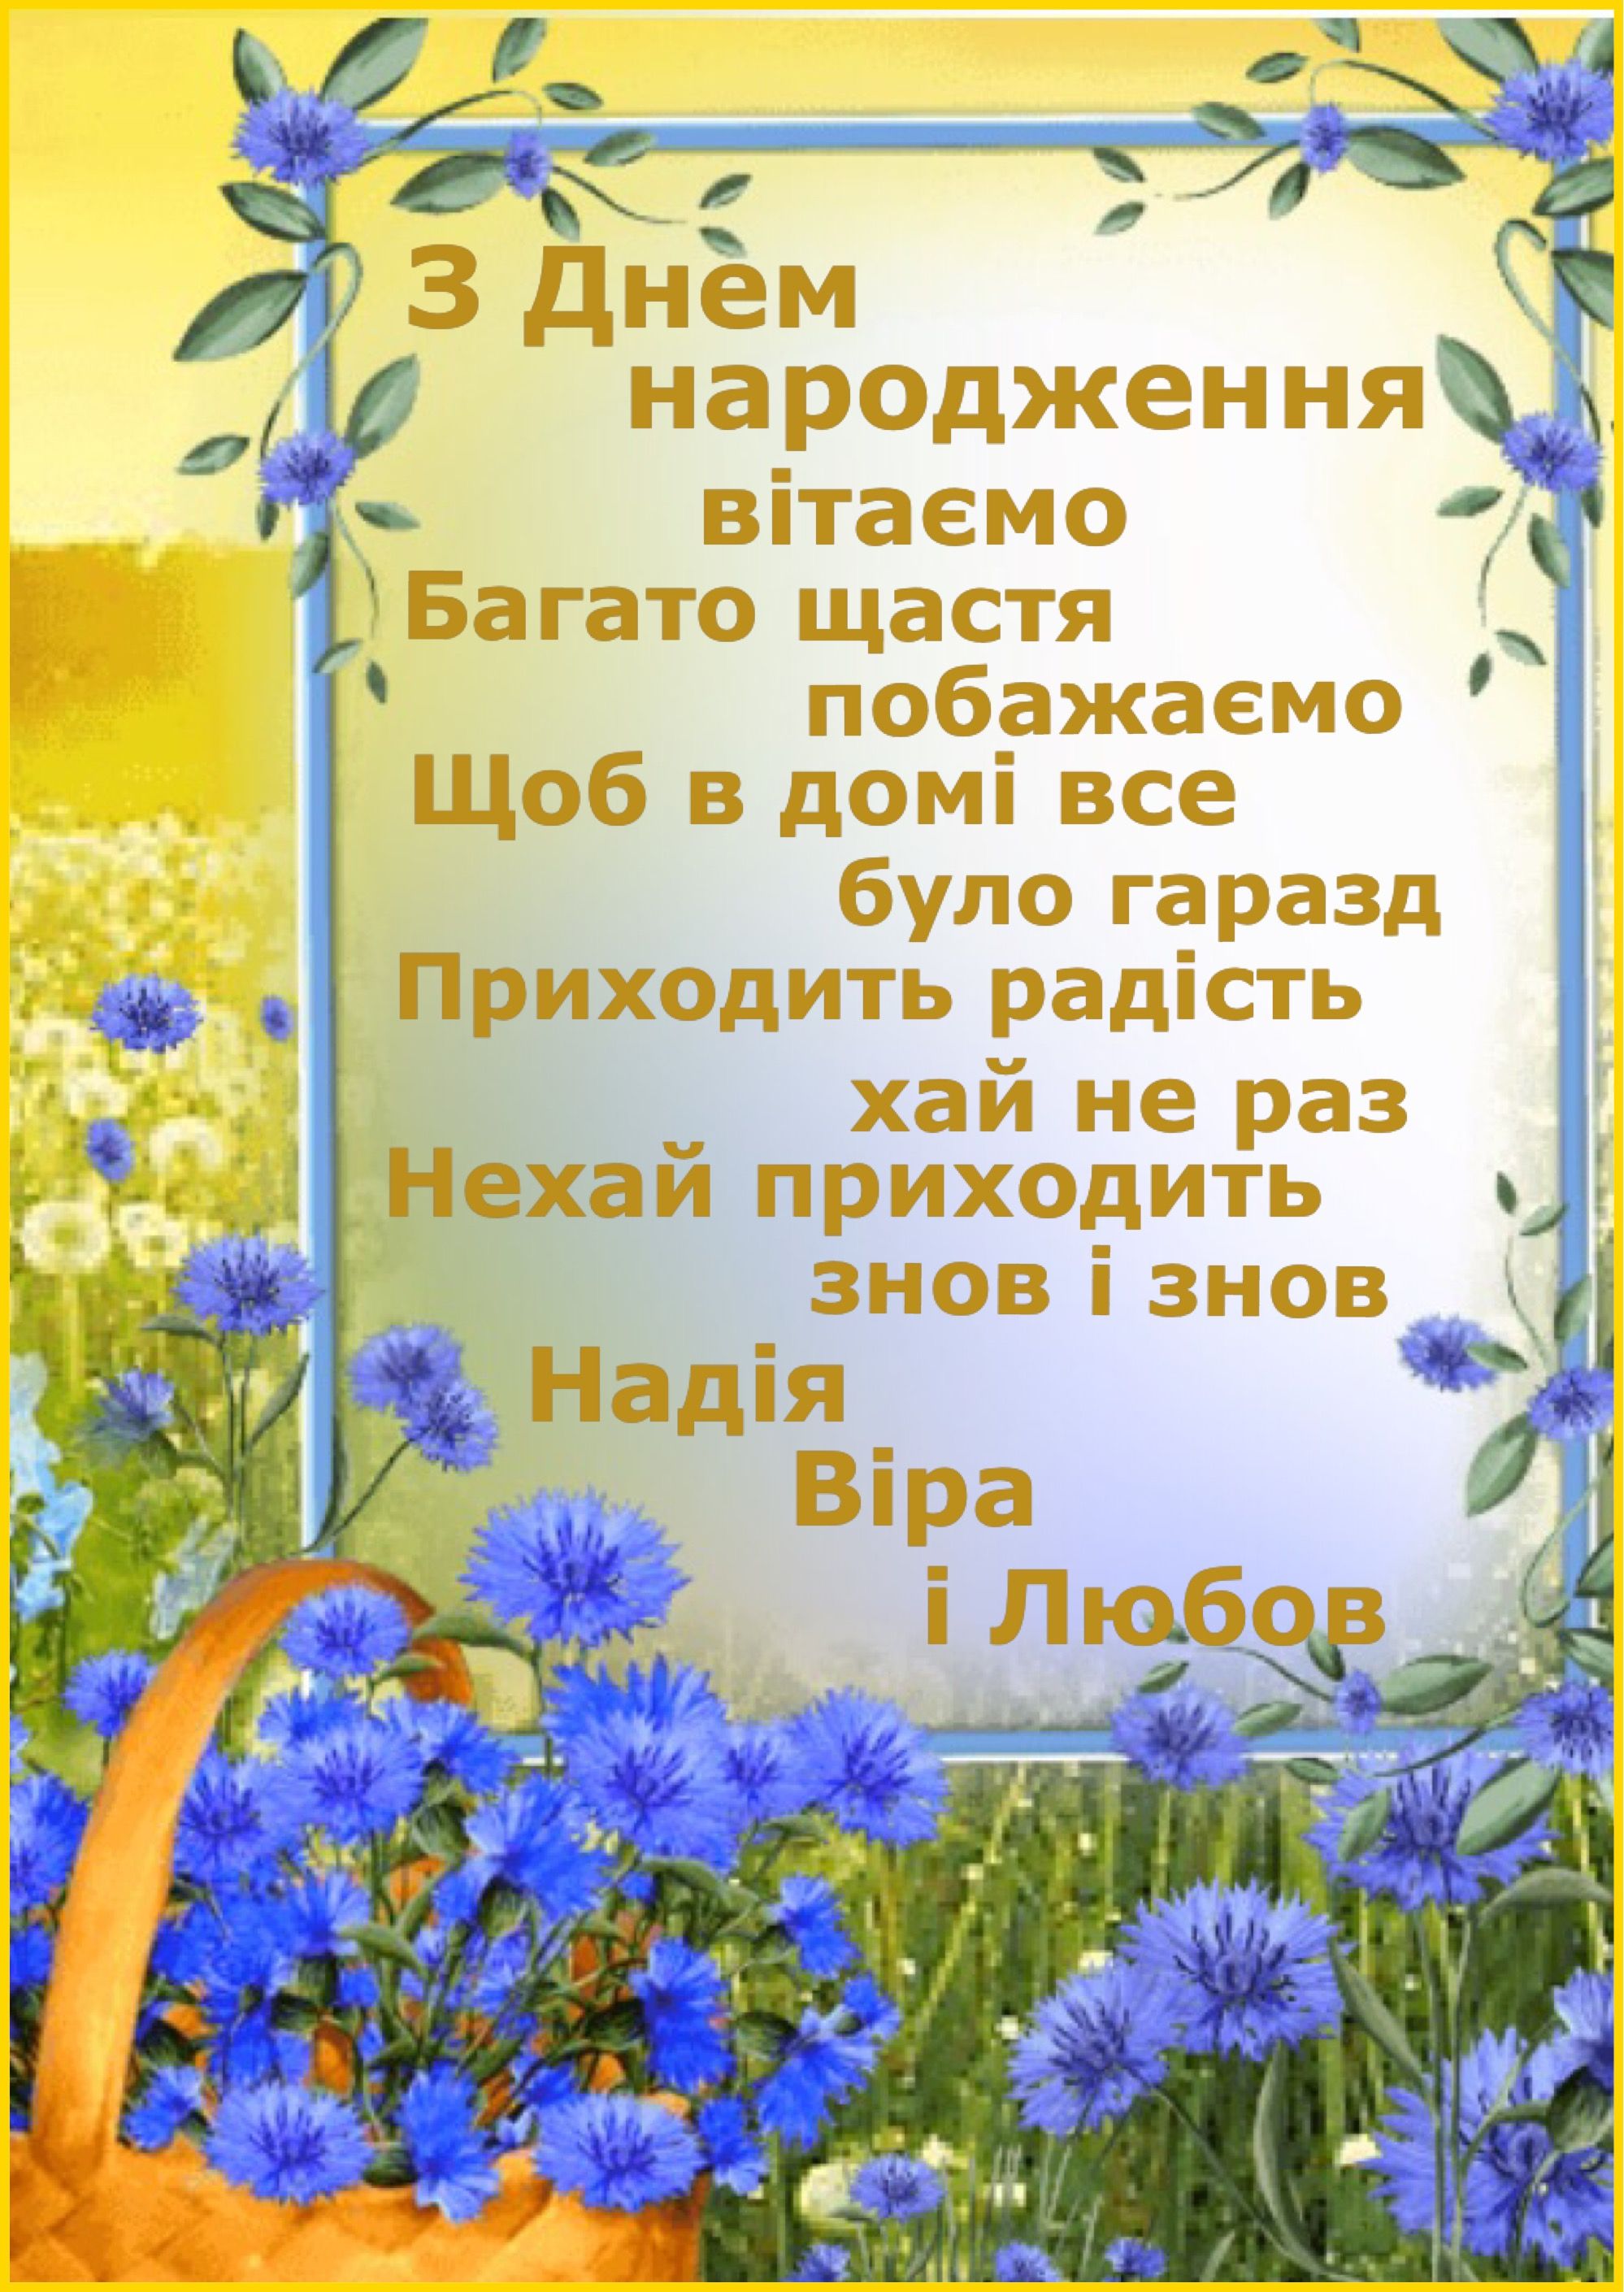 Привітати похресника з днем народження українською мовою
